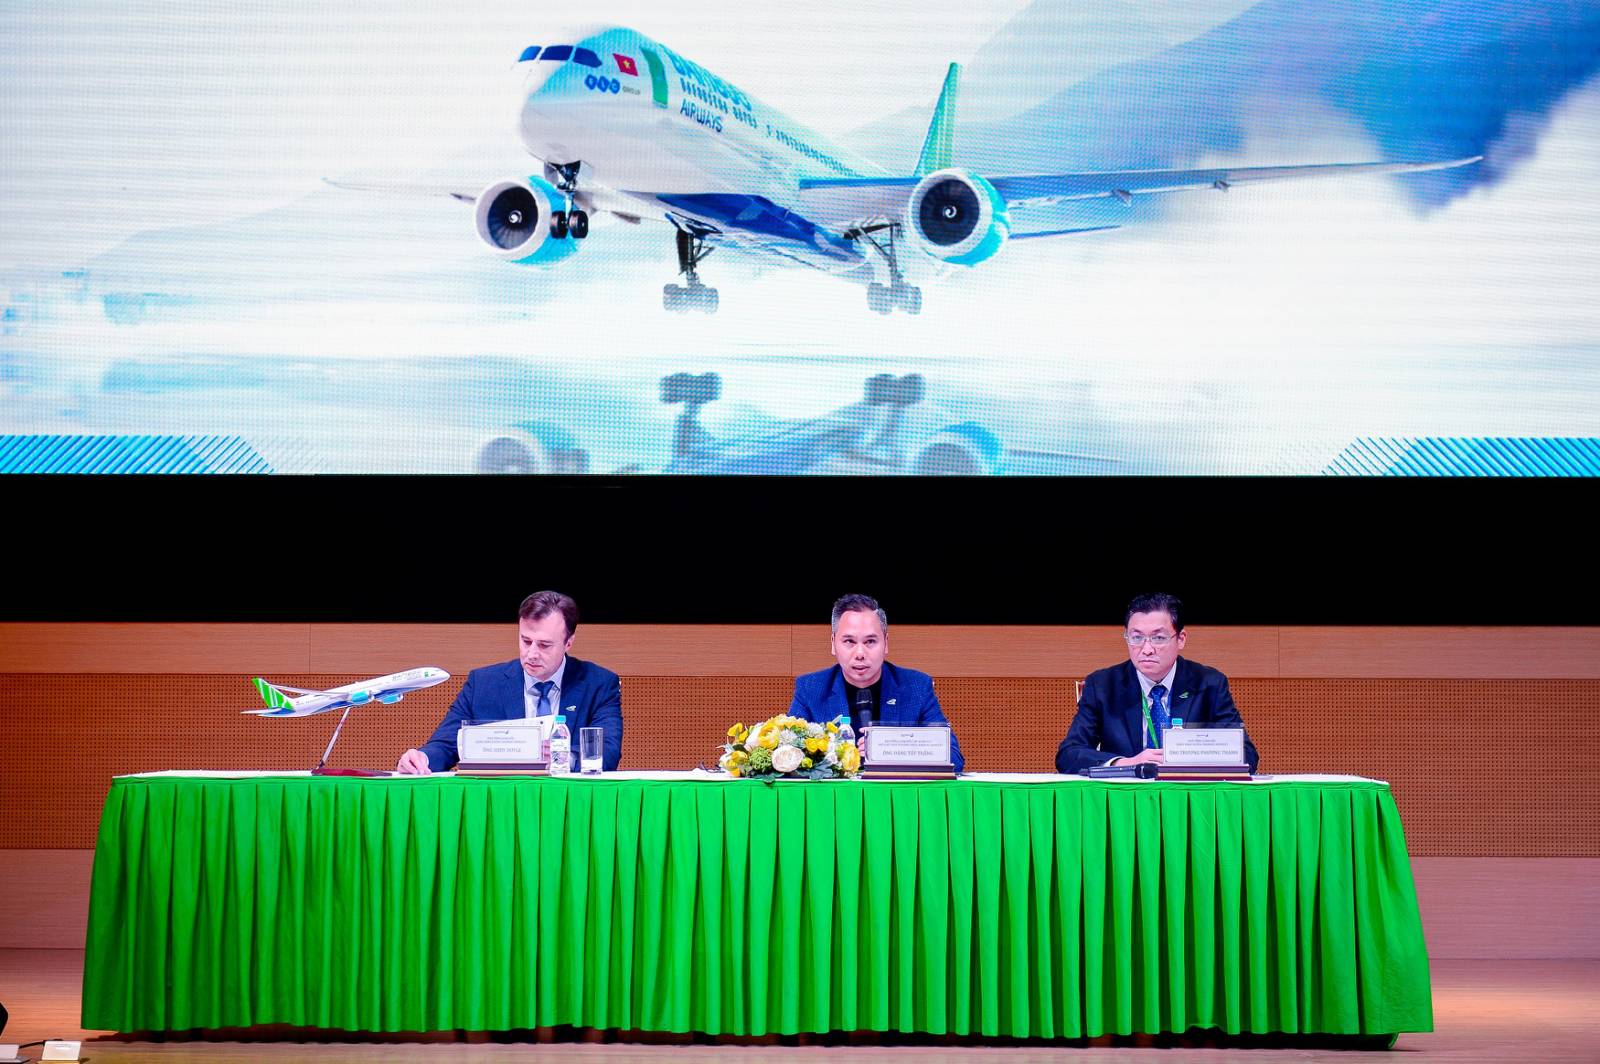 Để tạo điều kiện thuận lợi cho các nhà đầu tư quan tâm tới cổ phiếu BAV, Bamboo Airways cũng công bố Hội thảo với chủ đề “Tiềm năng & Cơ hội đầu tư Bamboo Airways”, tổ chức vào ngày 22/12/2019 tại quần thể nghỉ dưỡng FLC Hạ Long (Quảng Ninh).